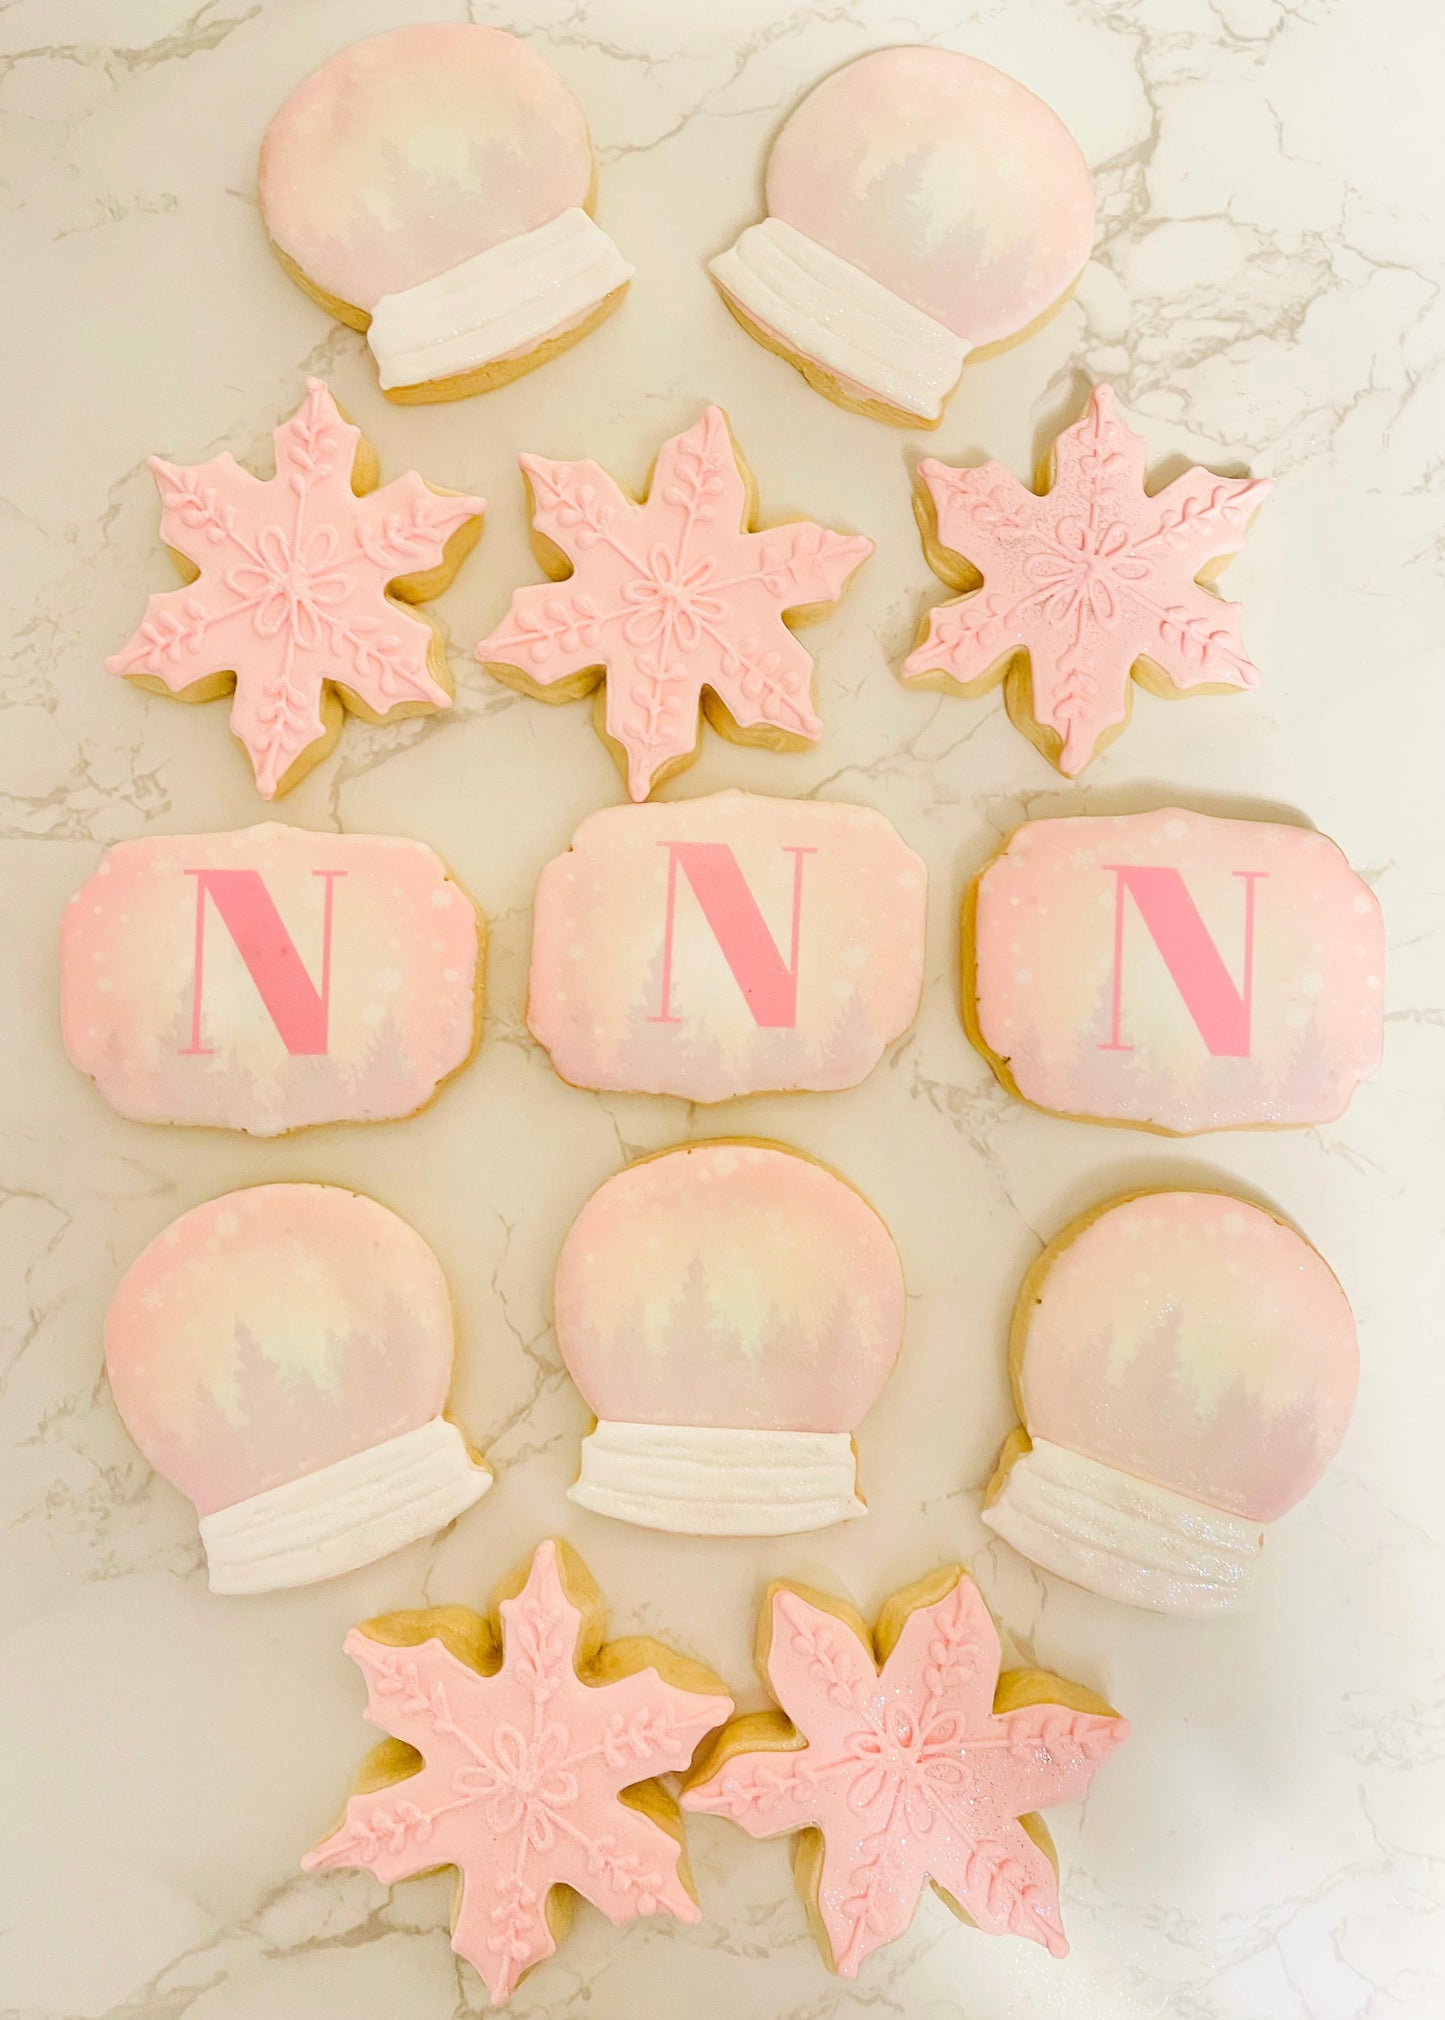 Winter Snowflake Sugar Cookies